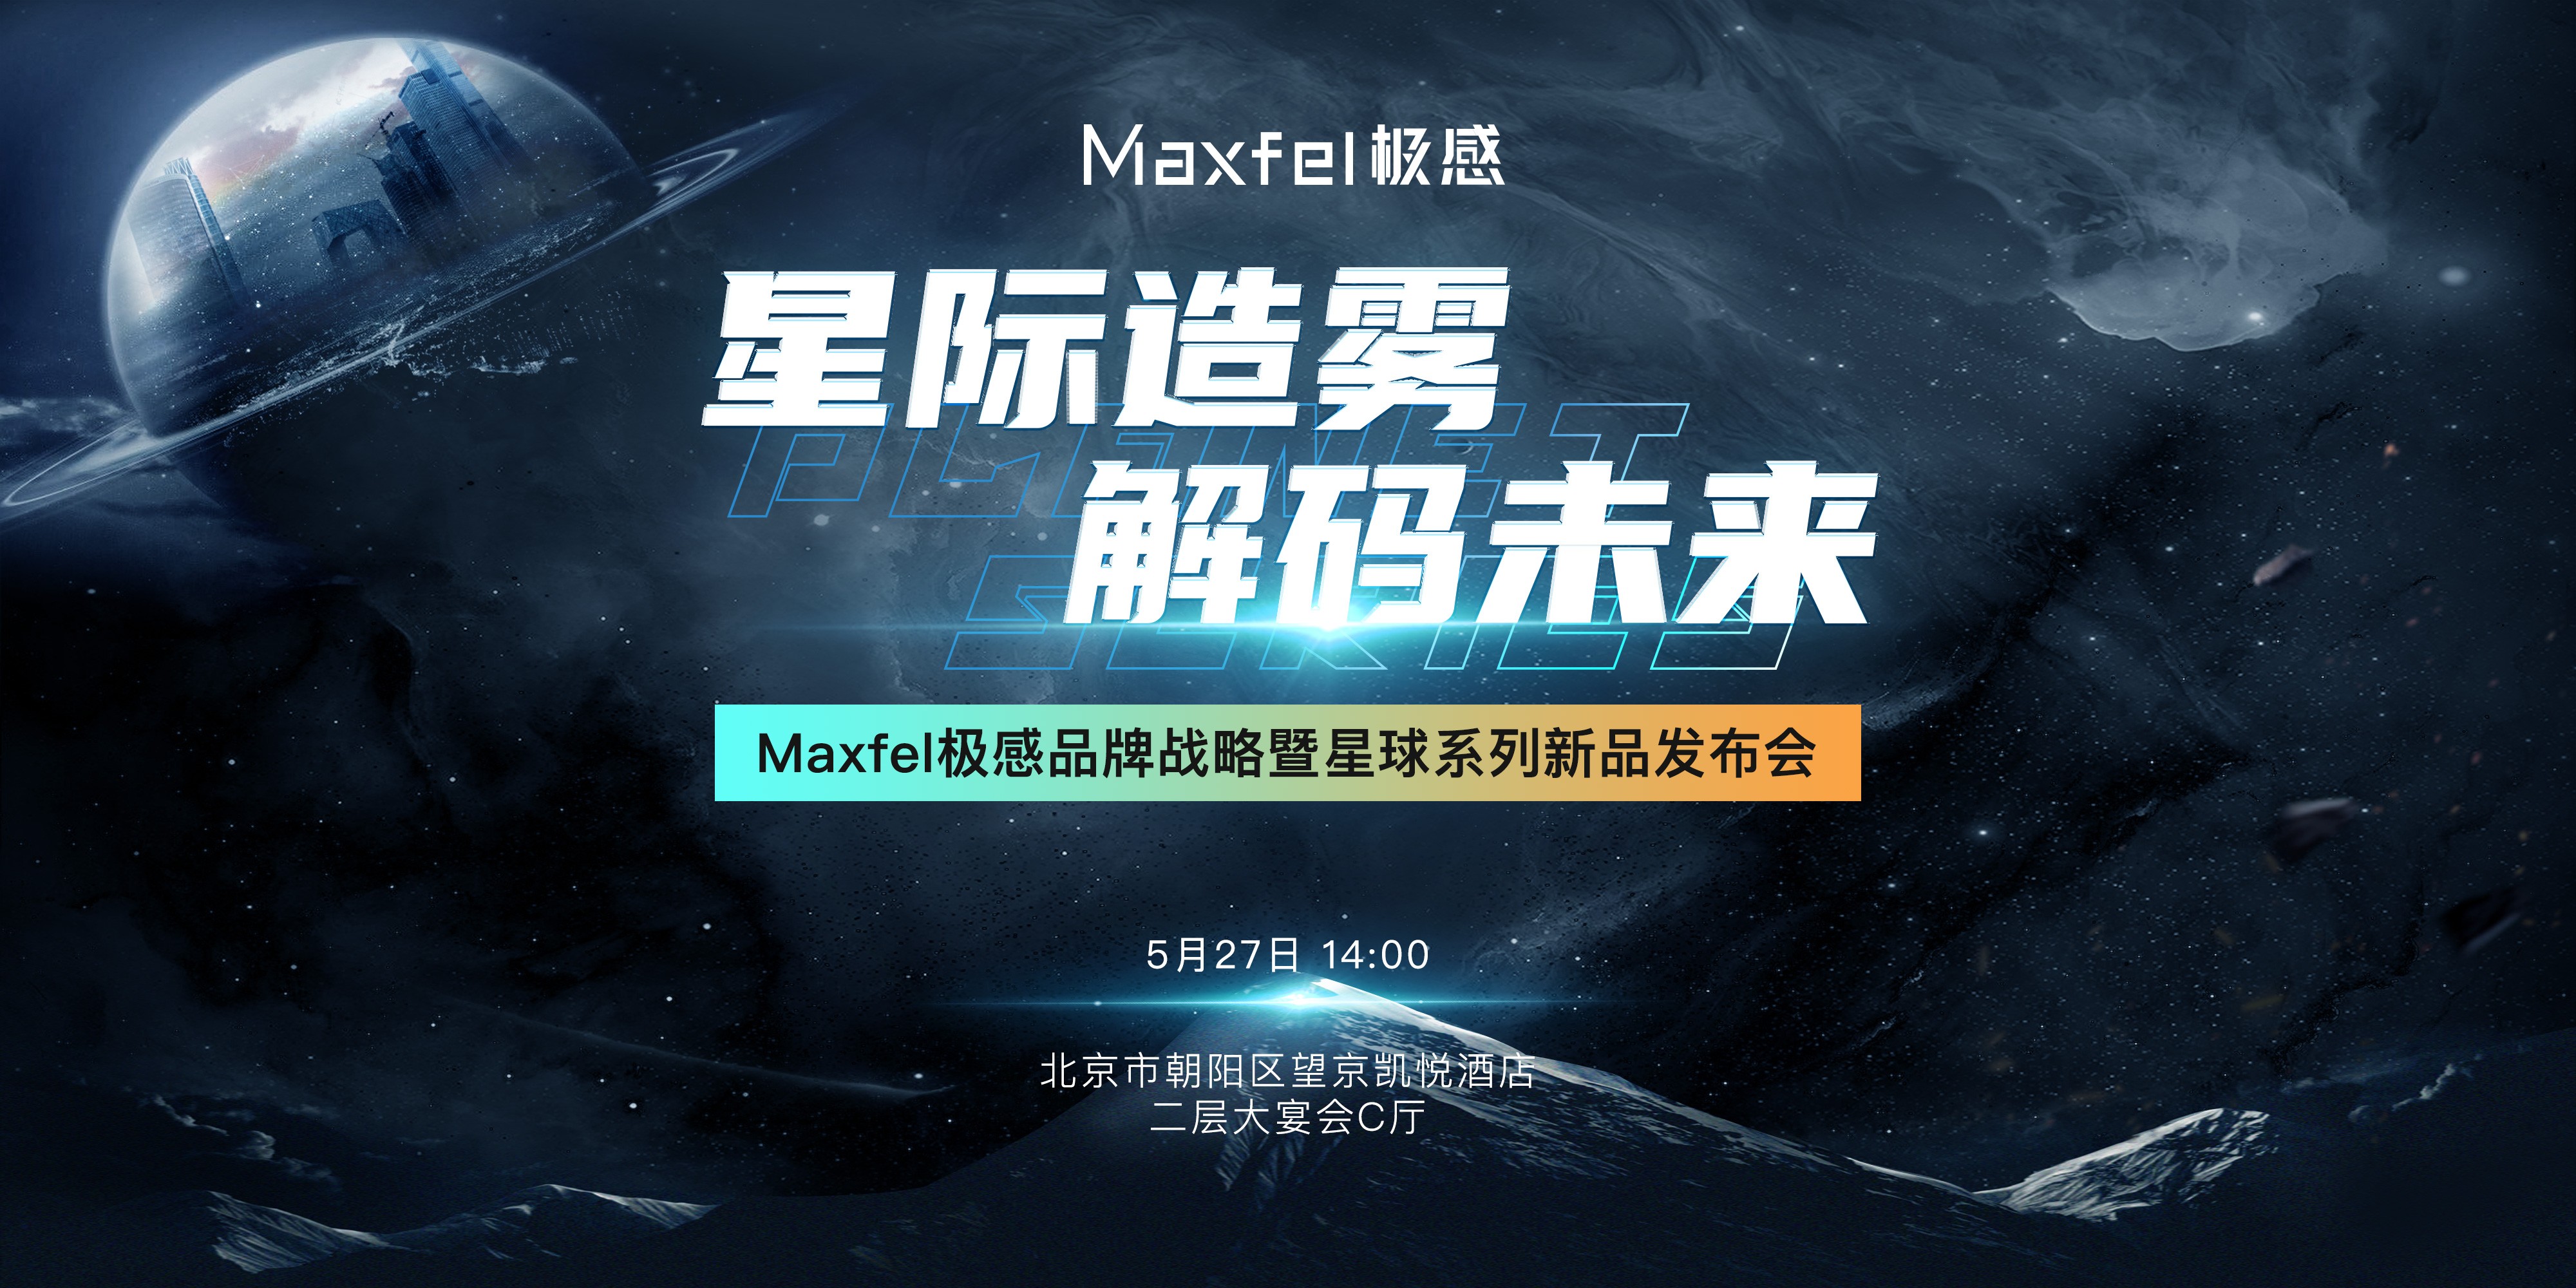 星际造雾、解码未来，Maxfel极感品牌战略暨星球系列新品发布会即将召开